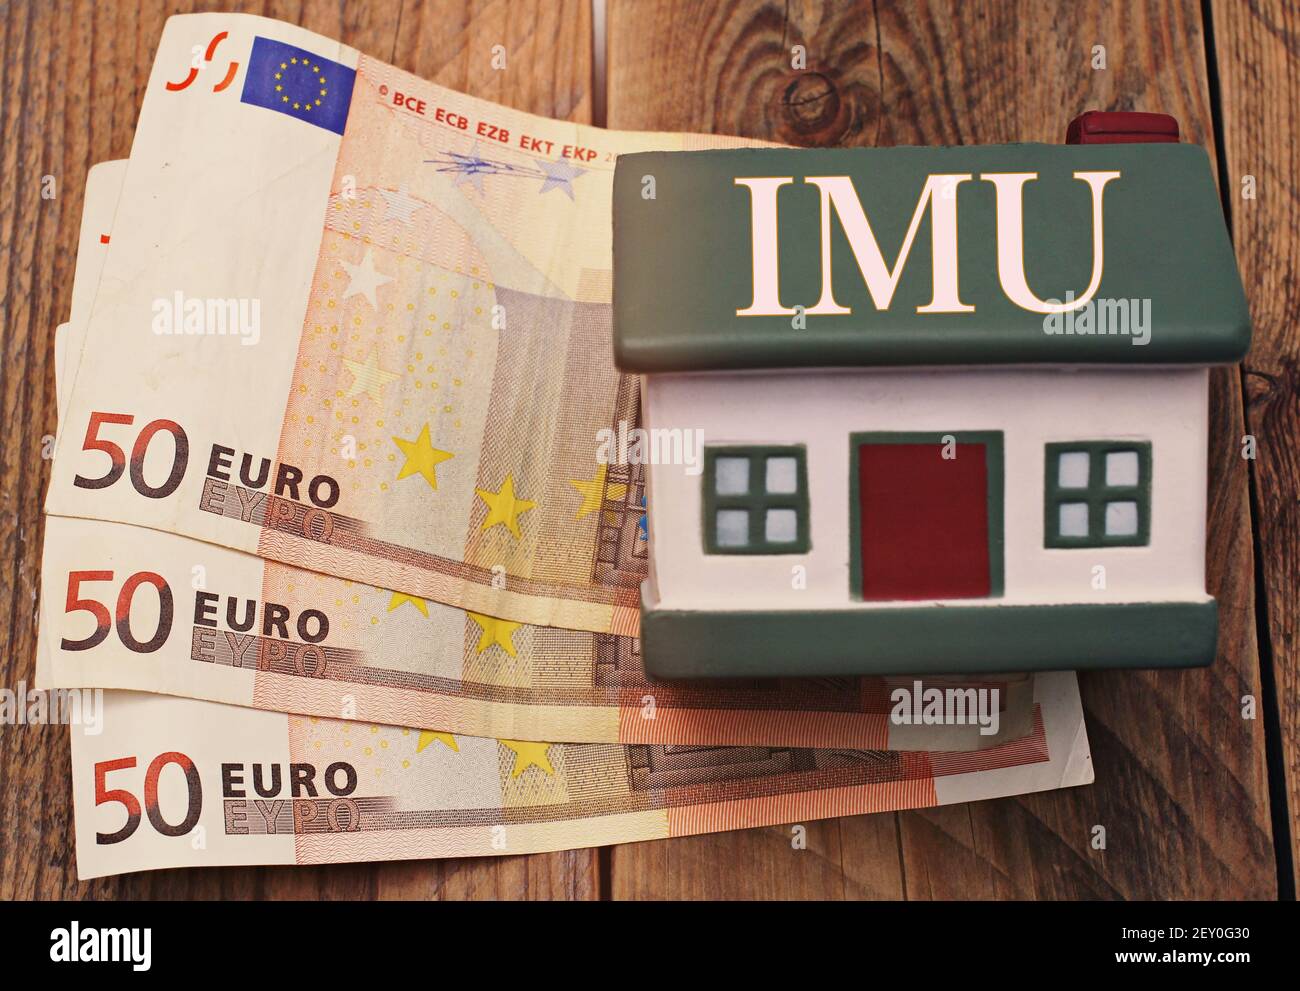 Maison avec des billets en euros avec le signe 'IMU' taxe italienne Banque D'Images